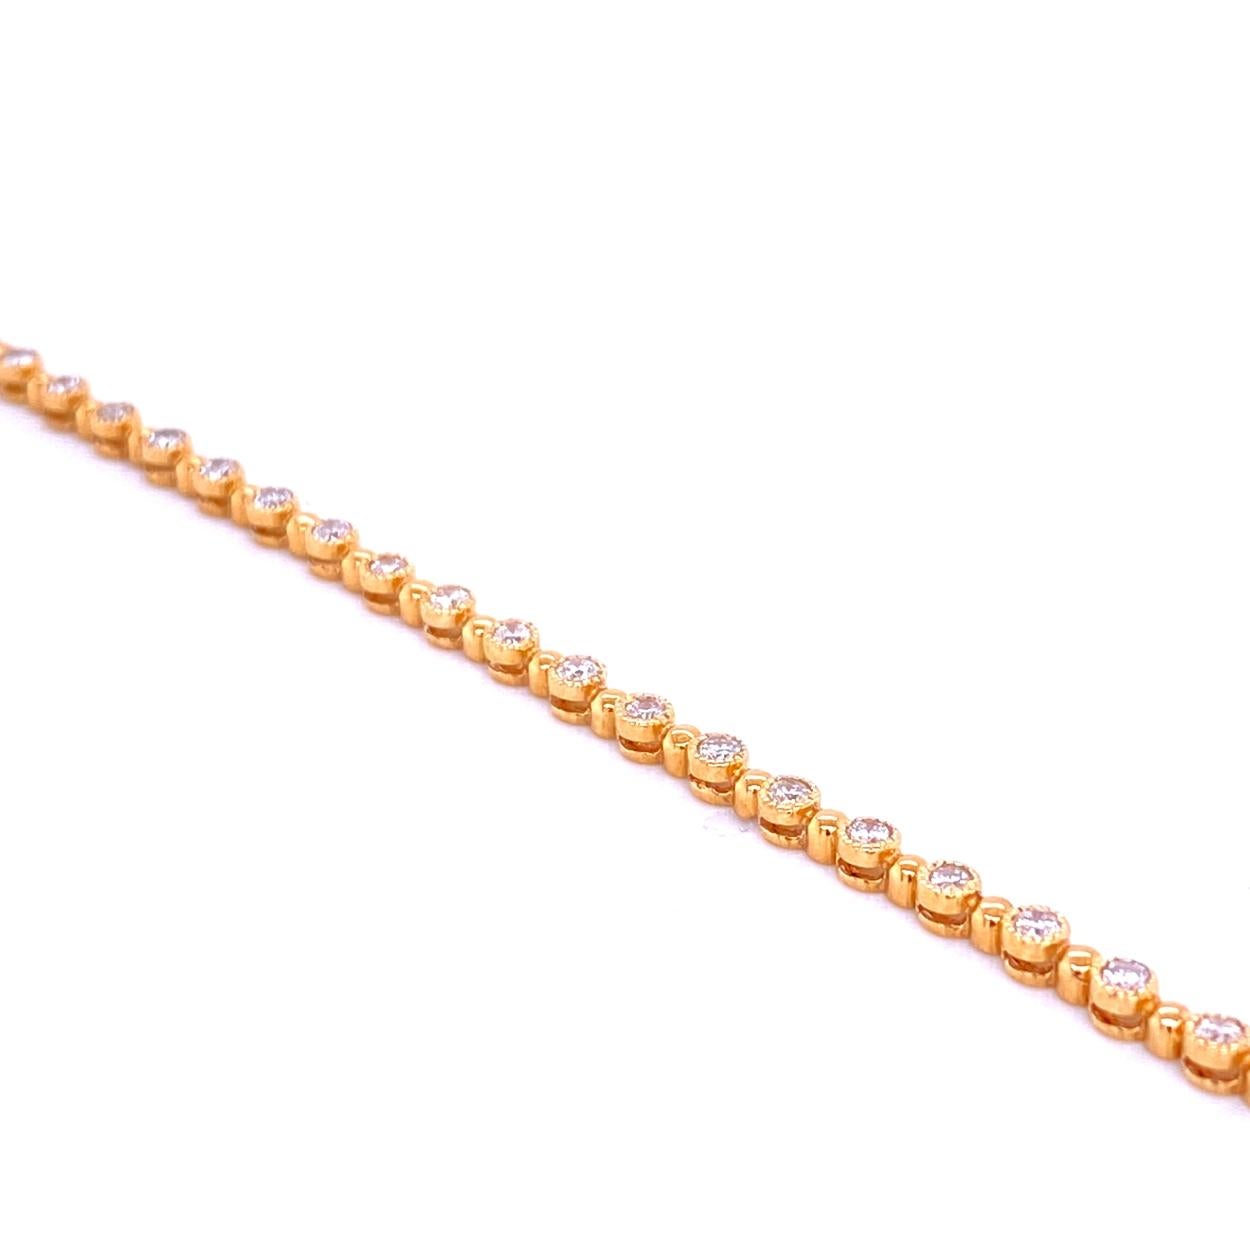 Dieses Diamantarmband besteht aus 36 Gliedern, die mit 1,8 mm großen runden Brillanten besetzt sind. Das Armband ist aus 14-karätigem Gold gefertigt und verfügt über milchige Ränder für maximale Brillanz.  Das Armband ist mit einem eingebauten